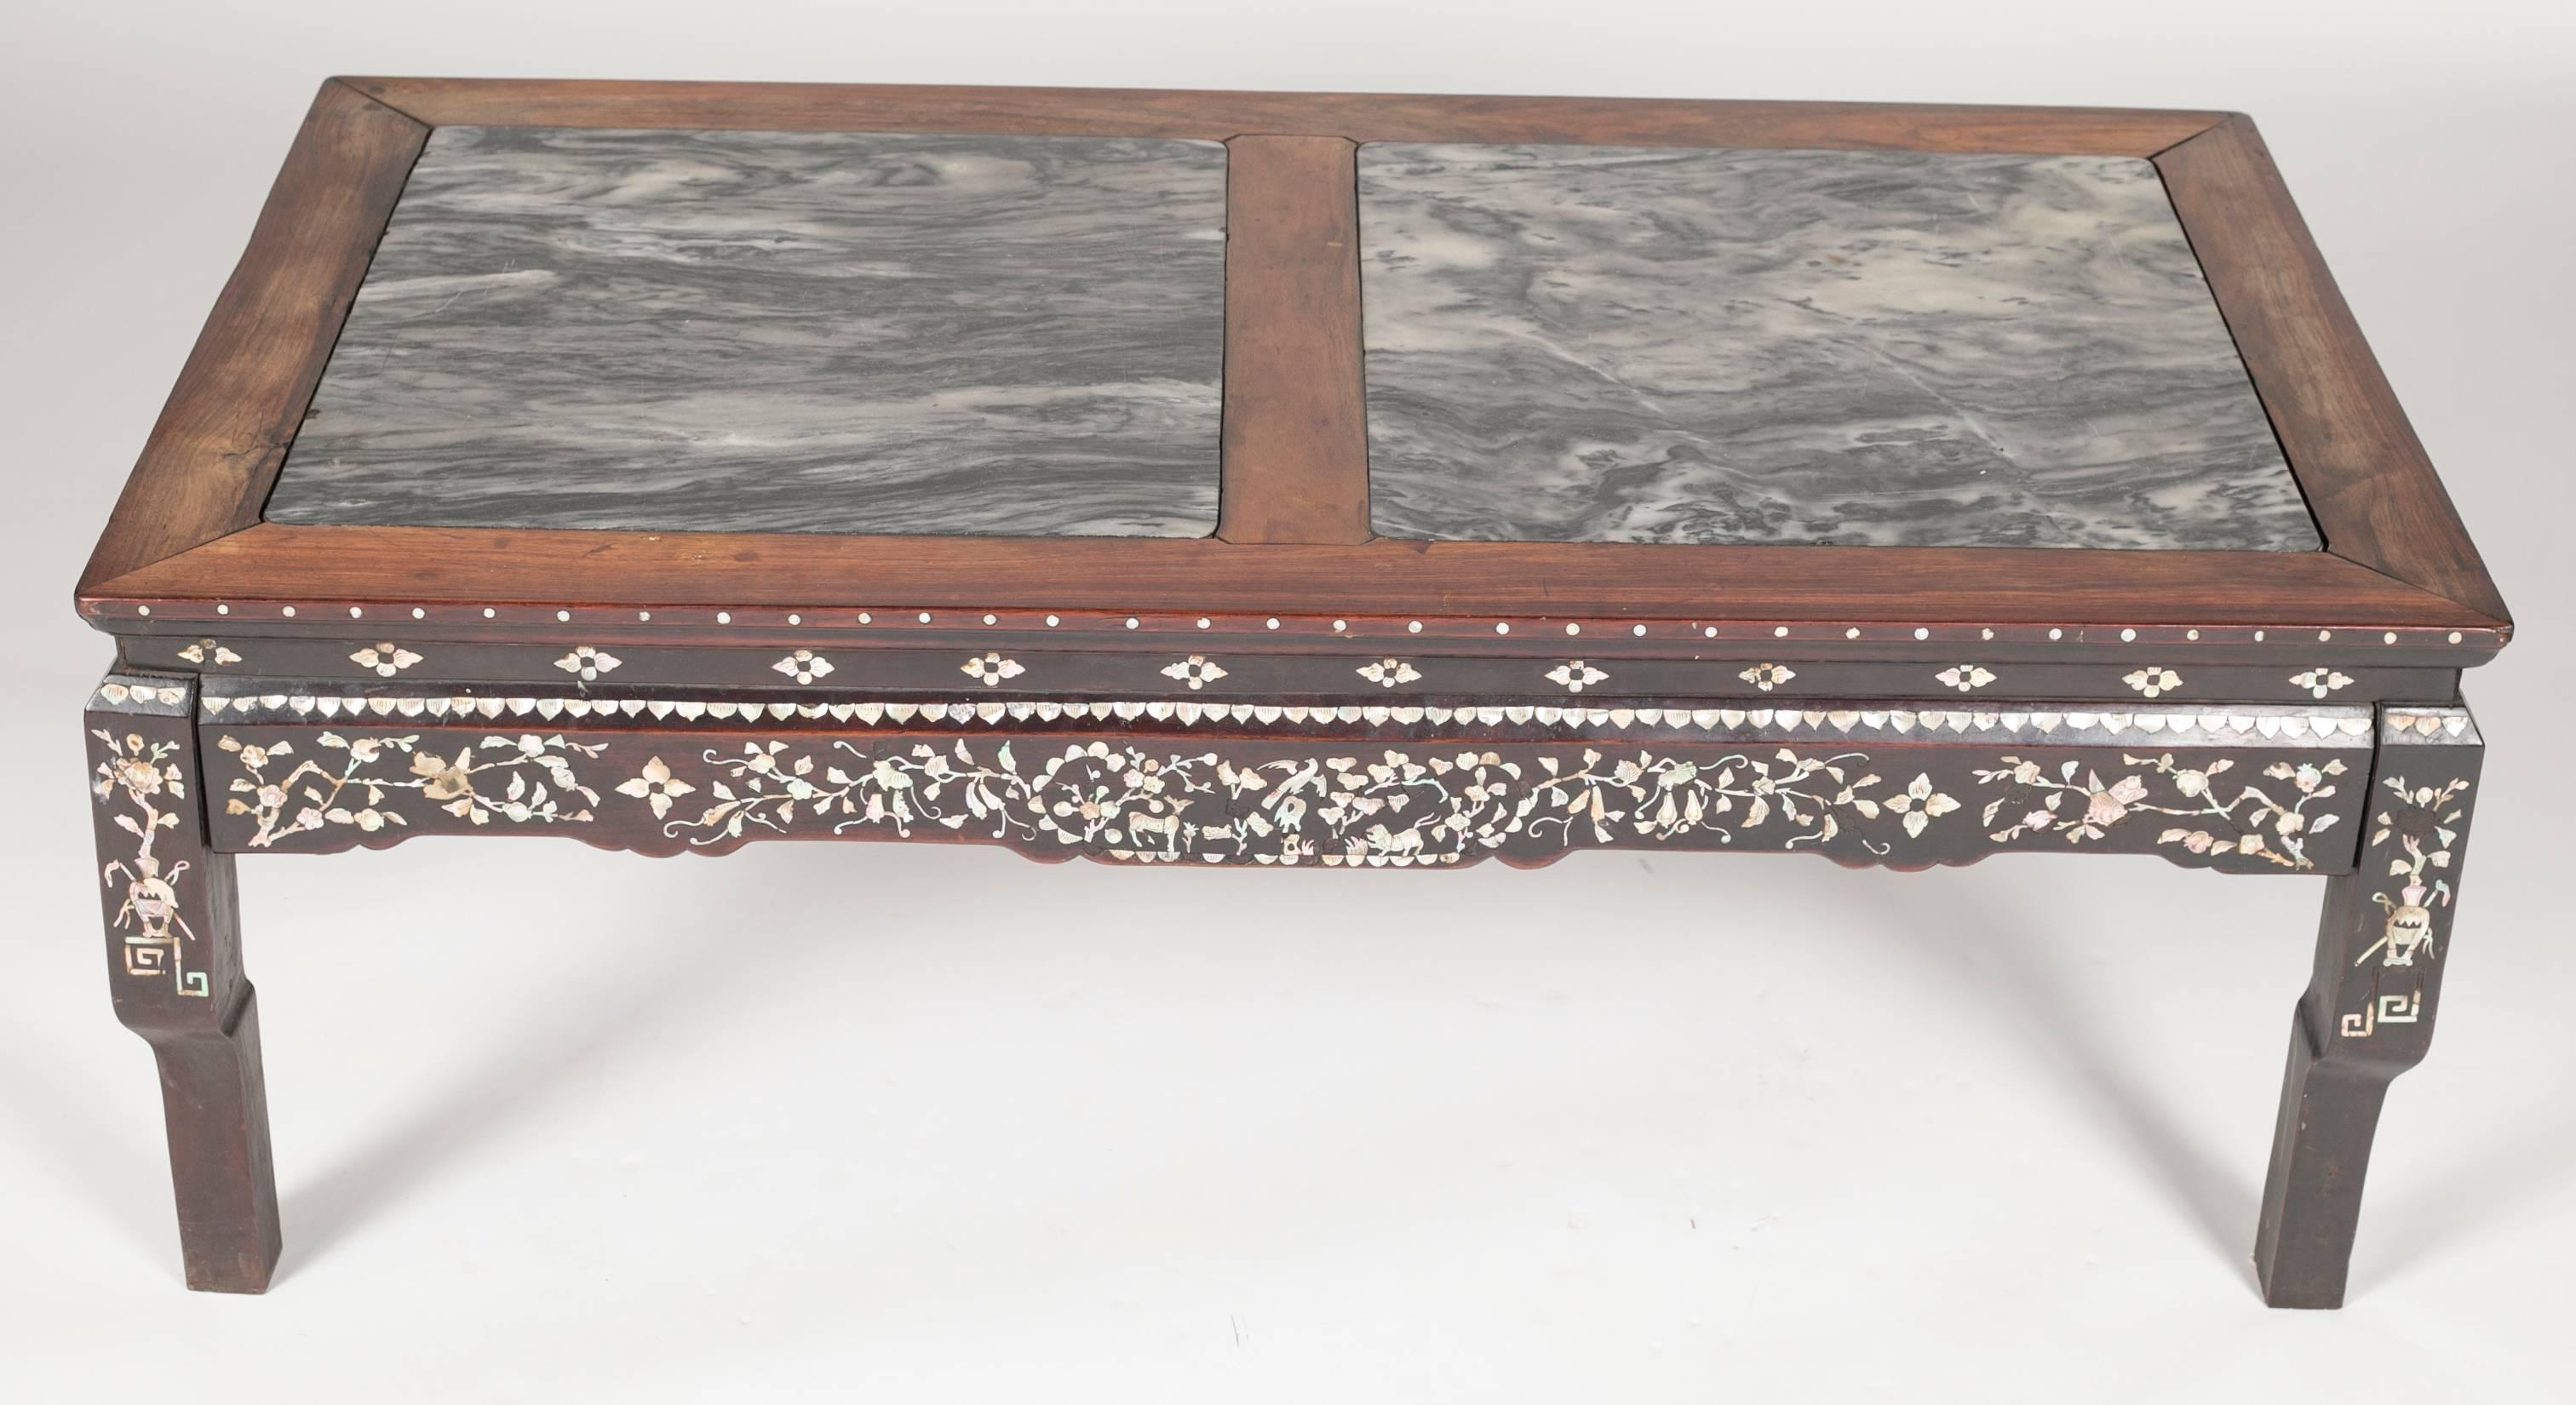 Chinesischer niedriger Tisch aus Hartholz mit Perlmuttintarsien und Marmorplatten.